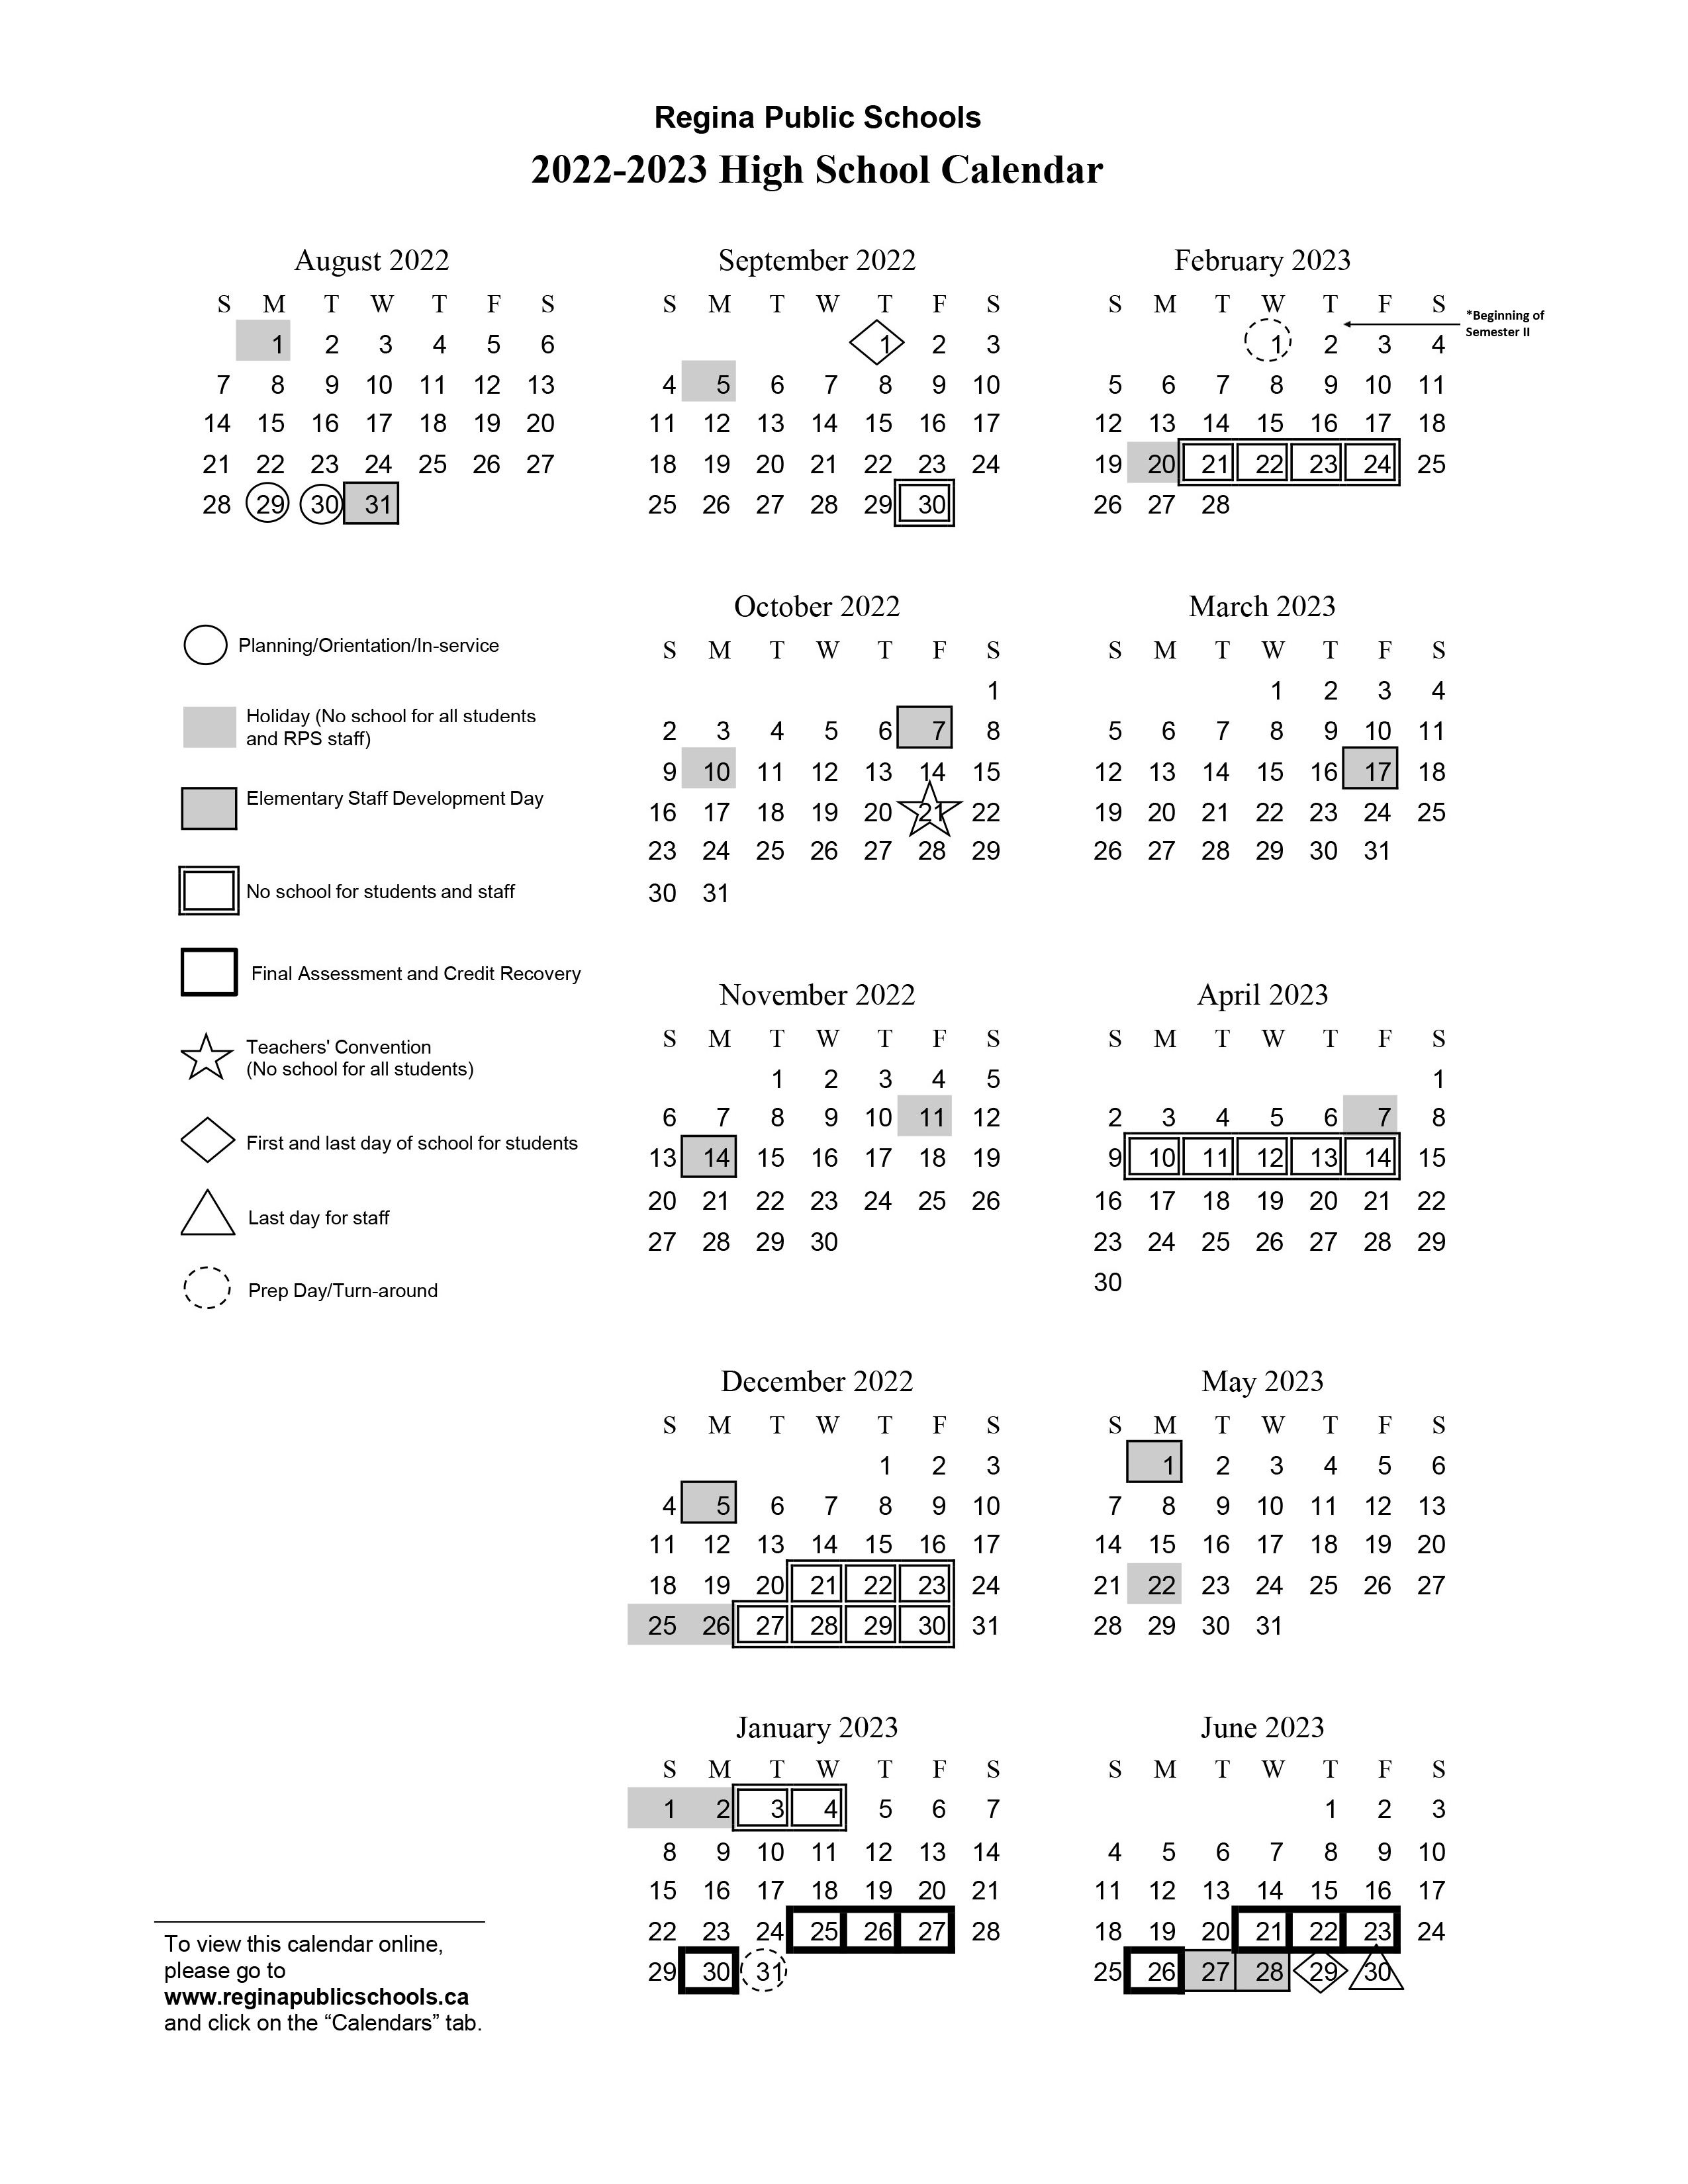 High School Calendar 202223 Regina Public Schools